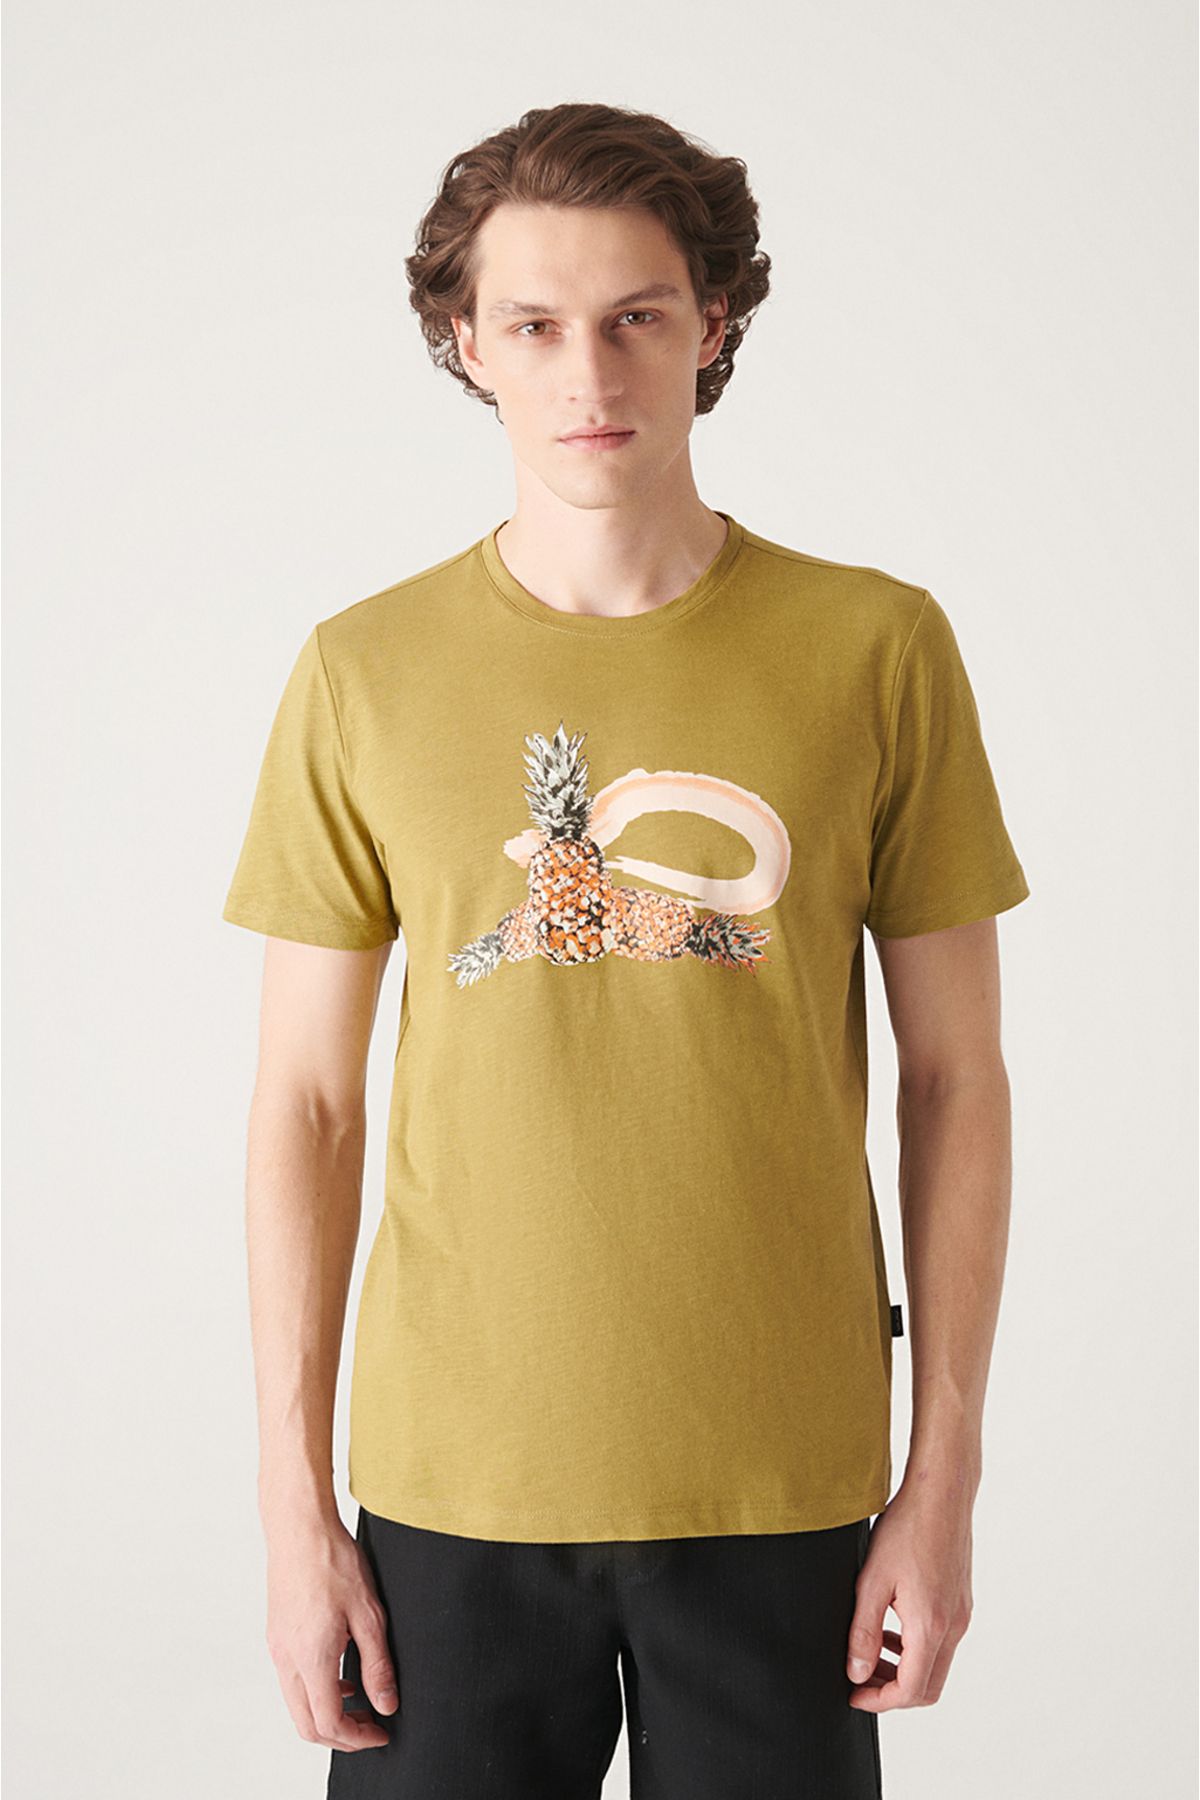 Avva Erkek Yağ Yeşili Baskılı Pamuklu T-shirt A21y1059